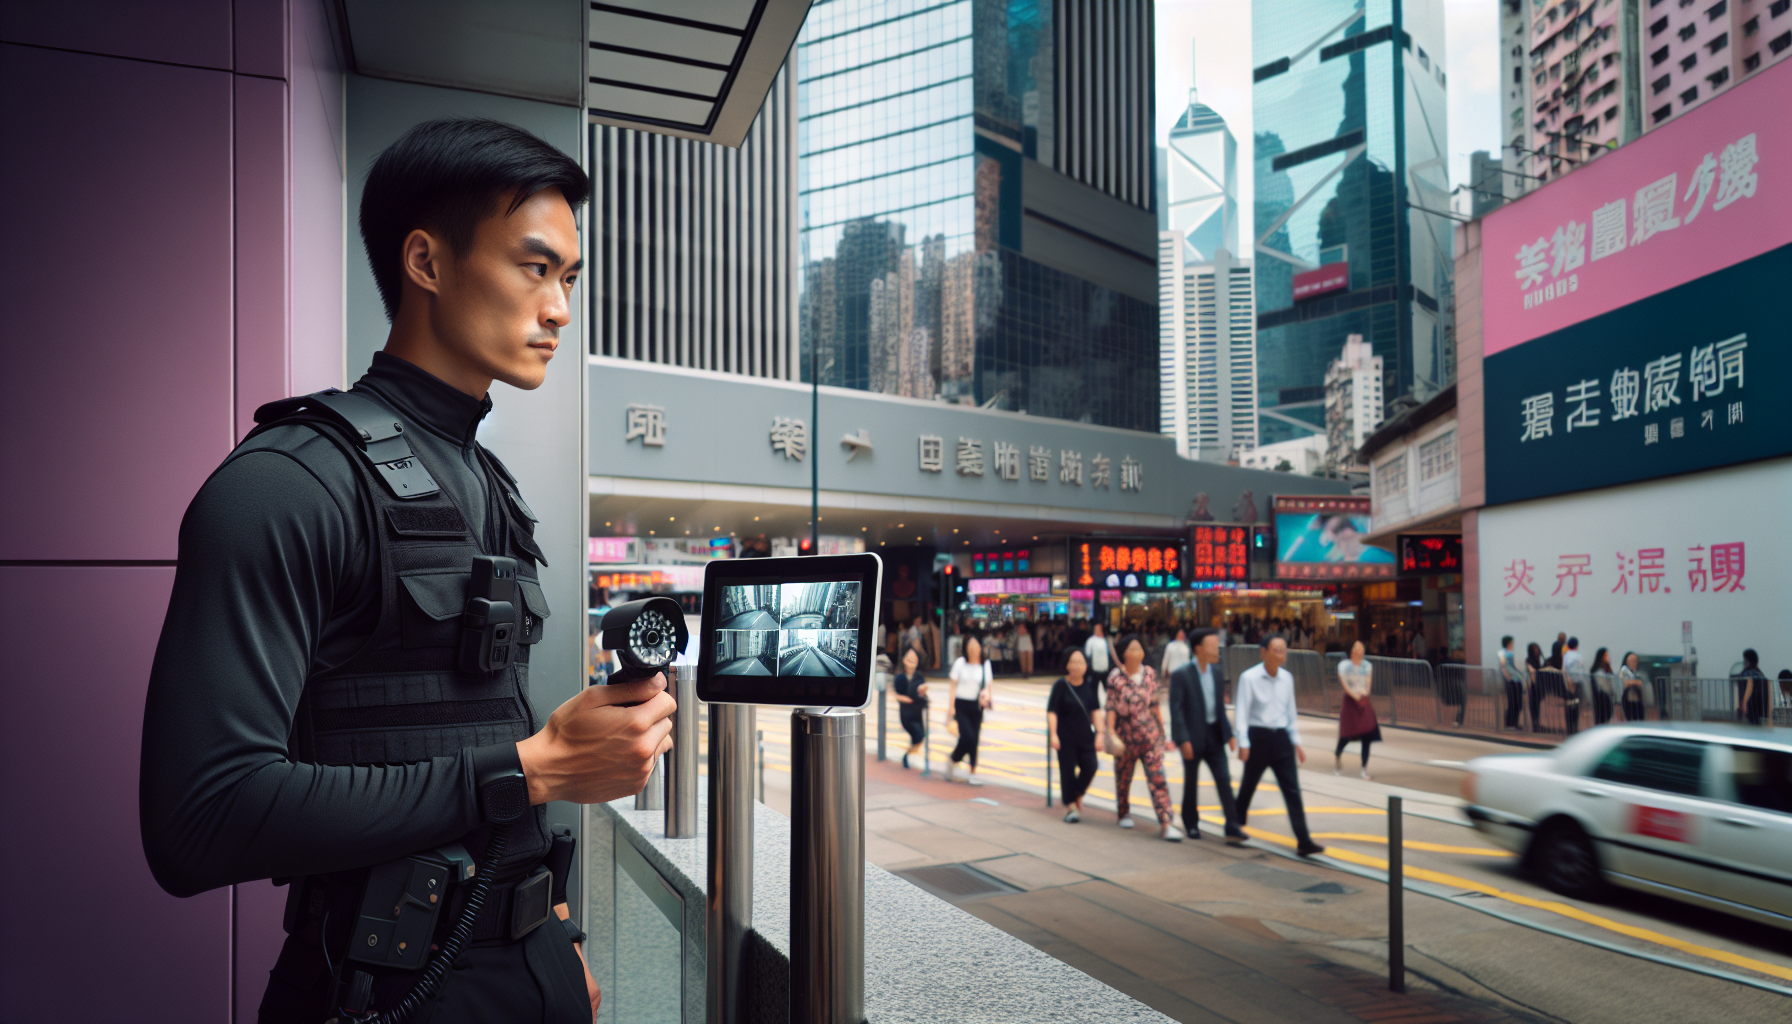 A security guard monitoring a CCTV camera in Hong Kong